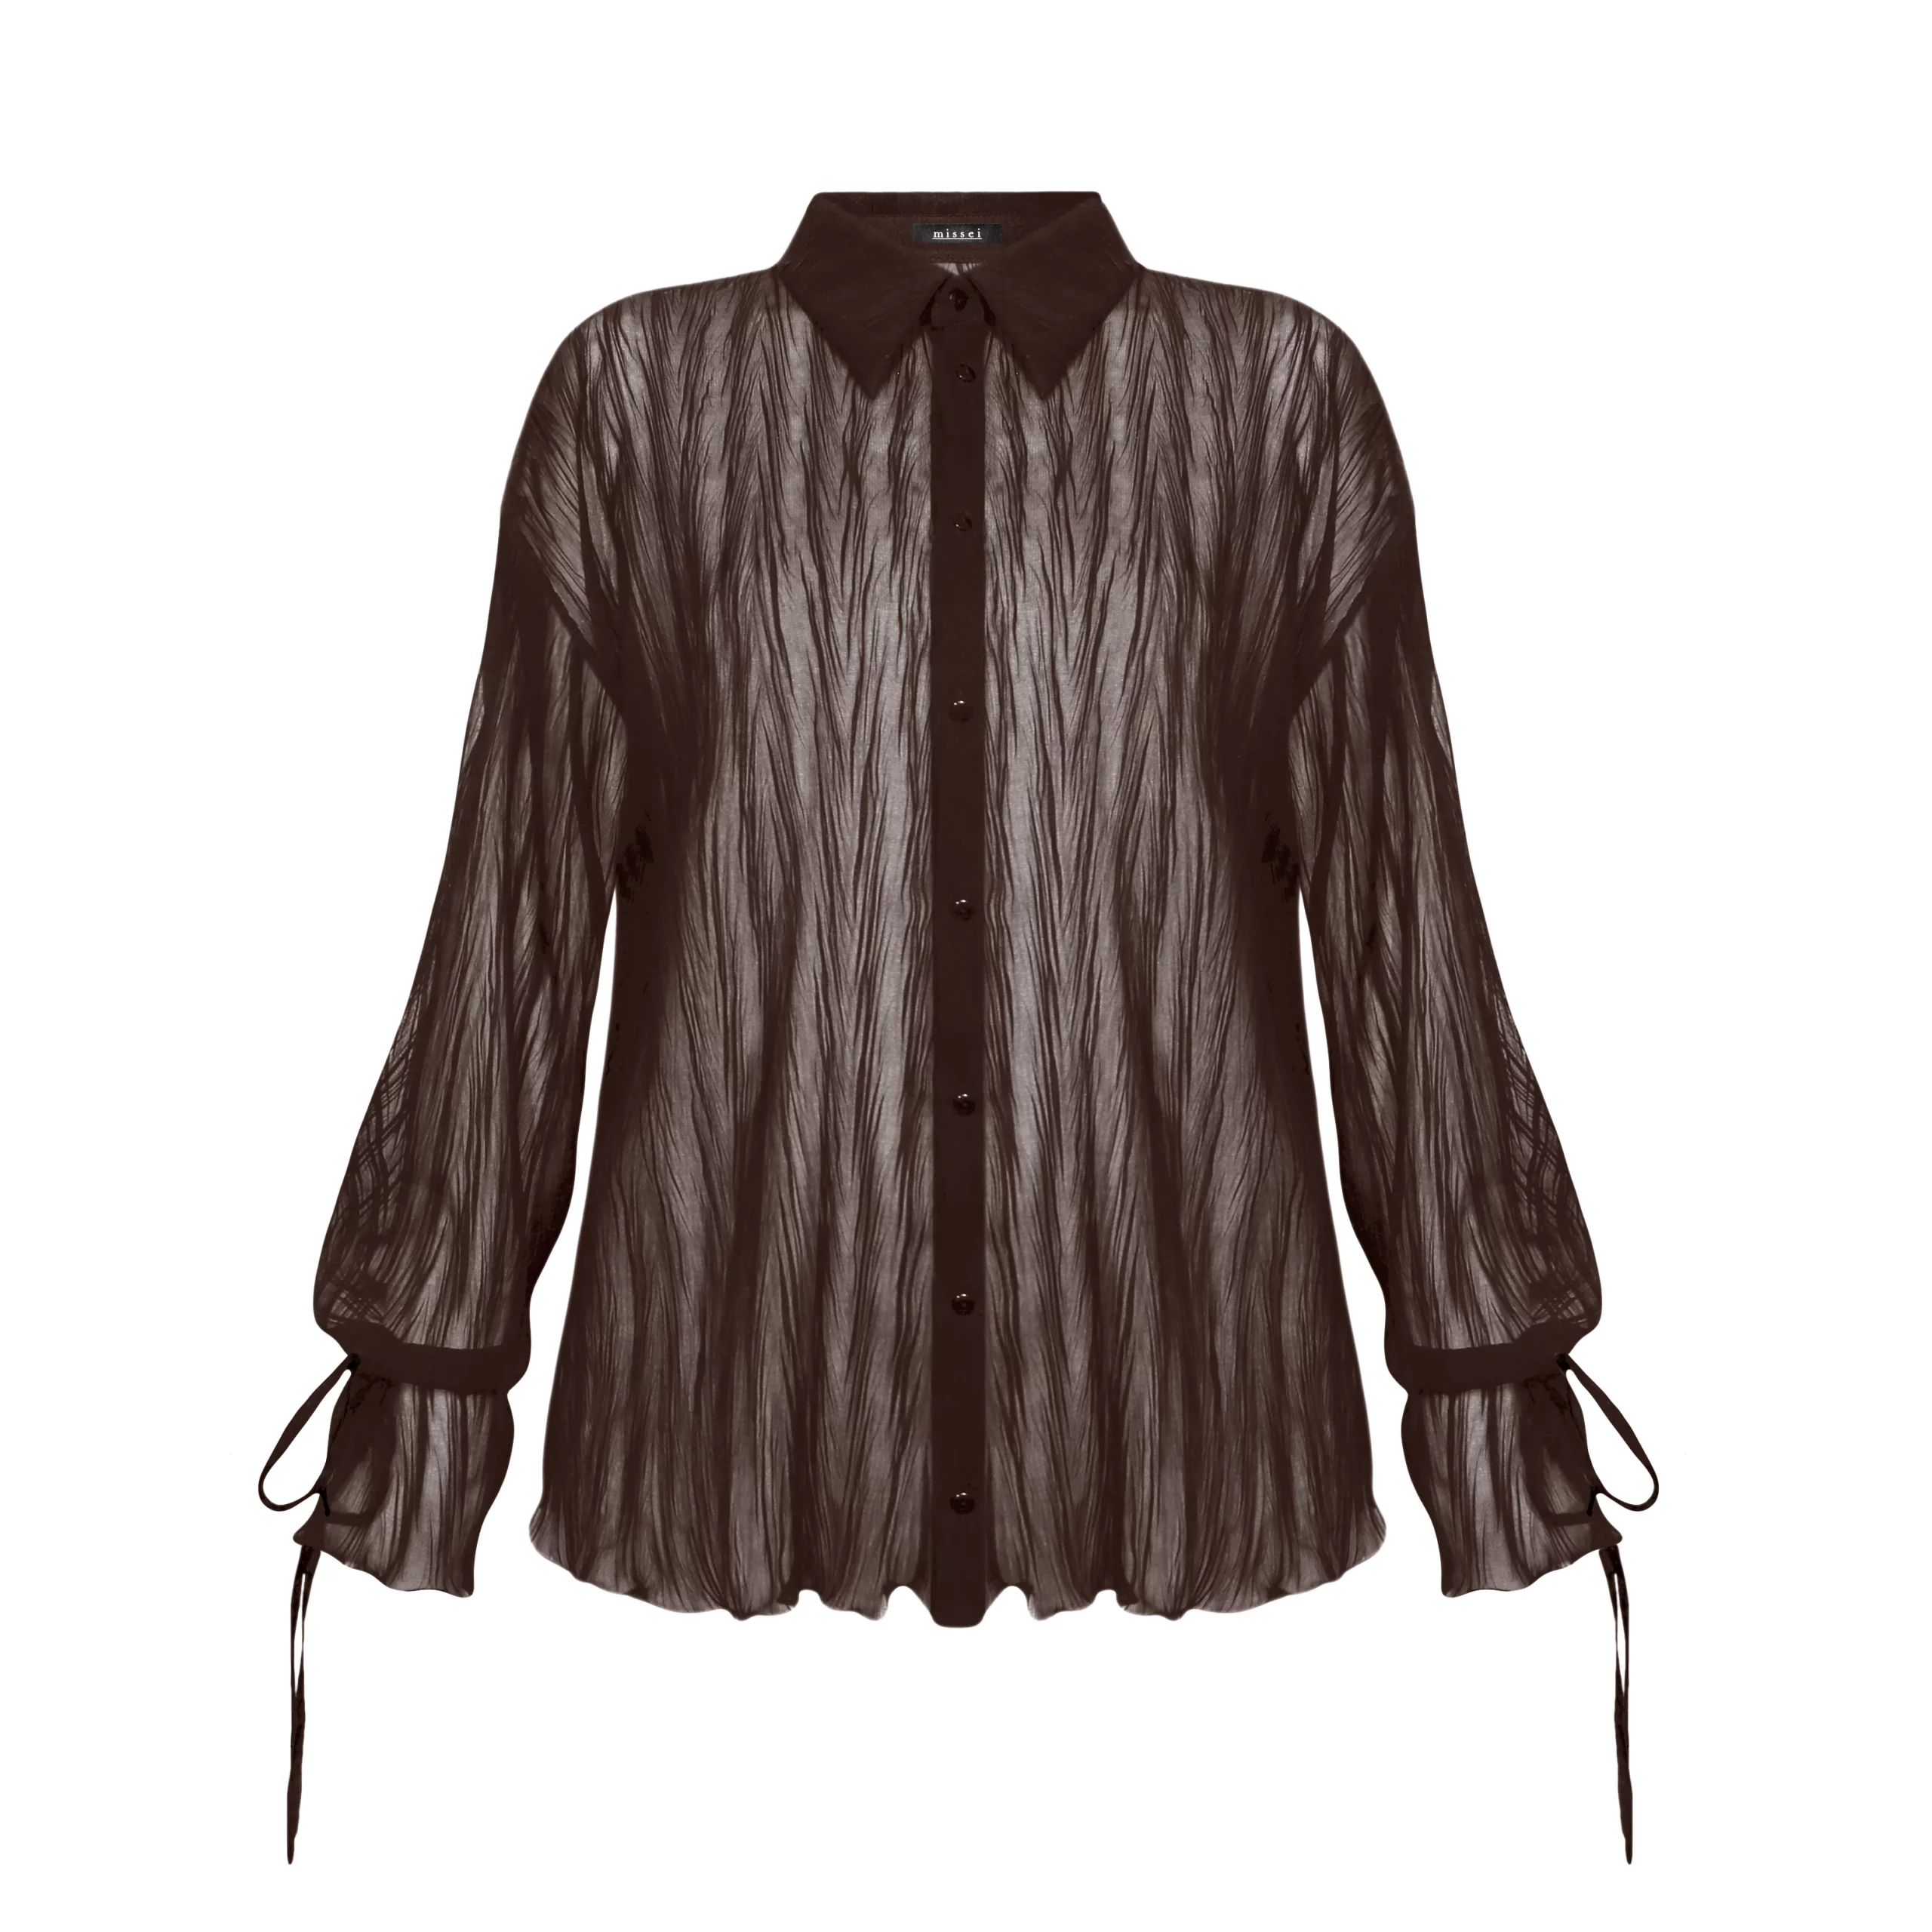 koszula brązowa czekoladowa koszula plisowana koszula kreszowana koszula strukturalna koszula transparentna koszula przezroczysta wiązane rękawy guziki z logo marki guziki corozo polska marka missei 2